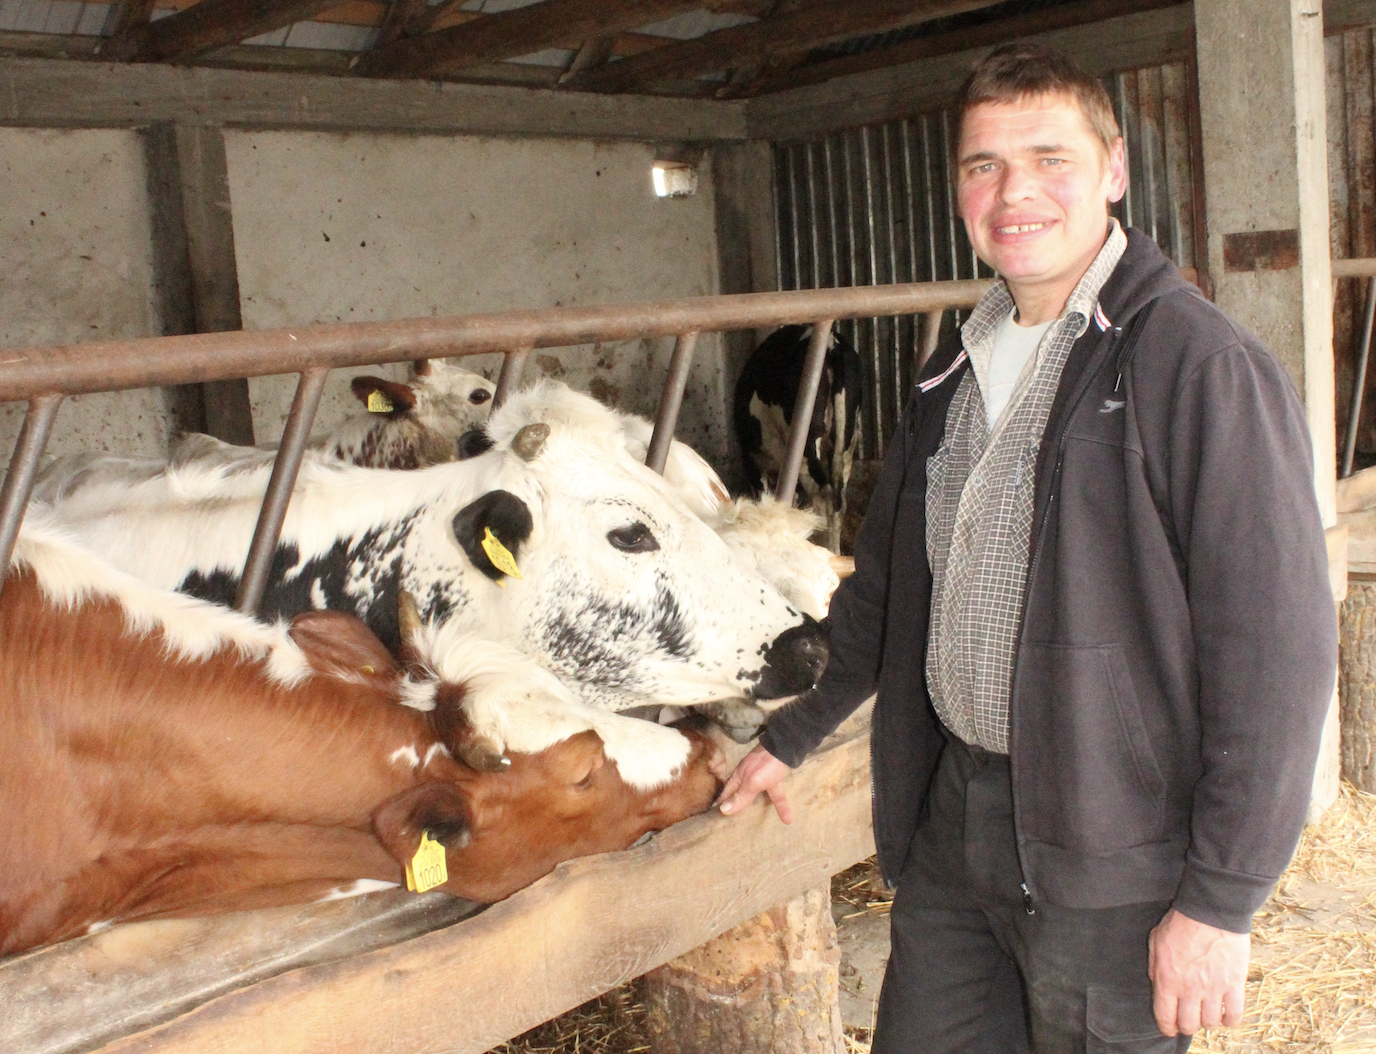 Wojciech Makarewicz, wspólnie z żoną Agnieszką, prowadzi w miejscowości Terebela, w powiecie bialskim, gospodarstwo specjalizujące się w hodowli bydła mlecznego. Hodowca uprawia około 70 ha, z czego tylko 15 stanowią grunty własne. Na 12 ha siana jest kukurydza, 7 ha zajmuje rzepak ozimy, na 7 ha uprawiany jest jęczmień jary. W tym roku po raz pierwszy wysiany został słonecznik na nasiona, 6 ha zajmuje lucerna w siewie czystym, a pozostała część to użytki zielone. Stado składa się z 37 krów mlecznych (z czego 16 to białogrzbiete) i 70 jałówek. Surowiec w ilości około 300 tys. litrów rocznie dostarczany jest do SM Mlekovita oddział Biała Podlaska. Stado objęte jest oceną użytkowości mlecznej.